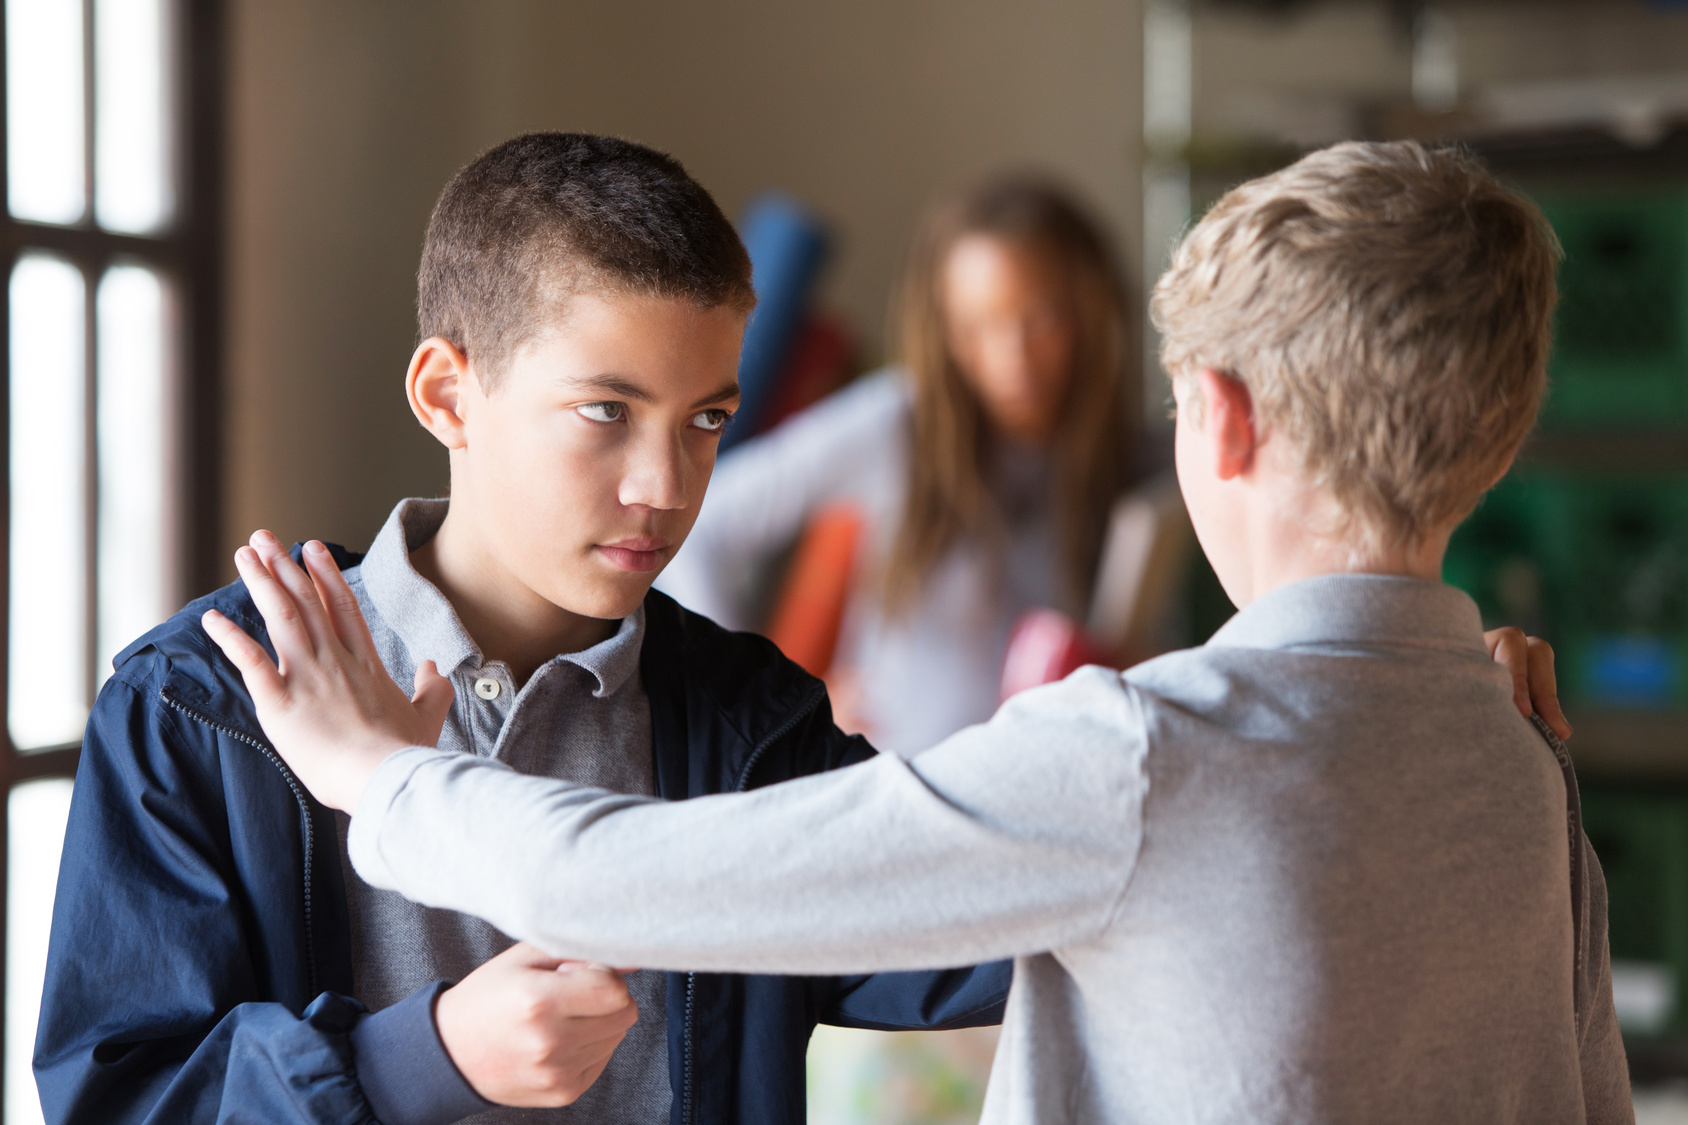 Bullying na escola: como os pais podem ajudar as vítimas e impedir  agressões